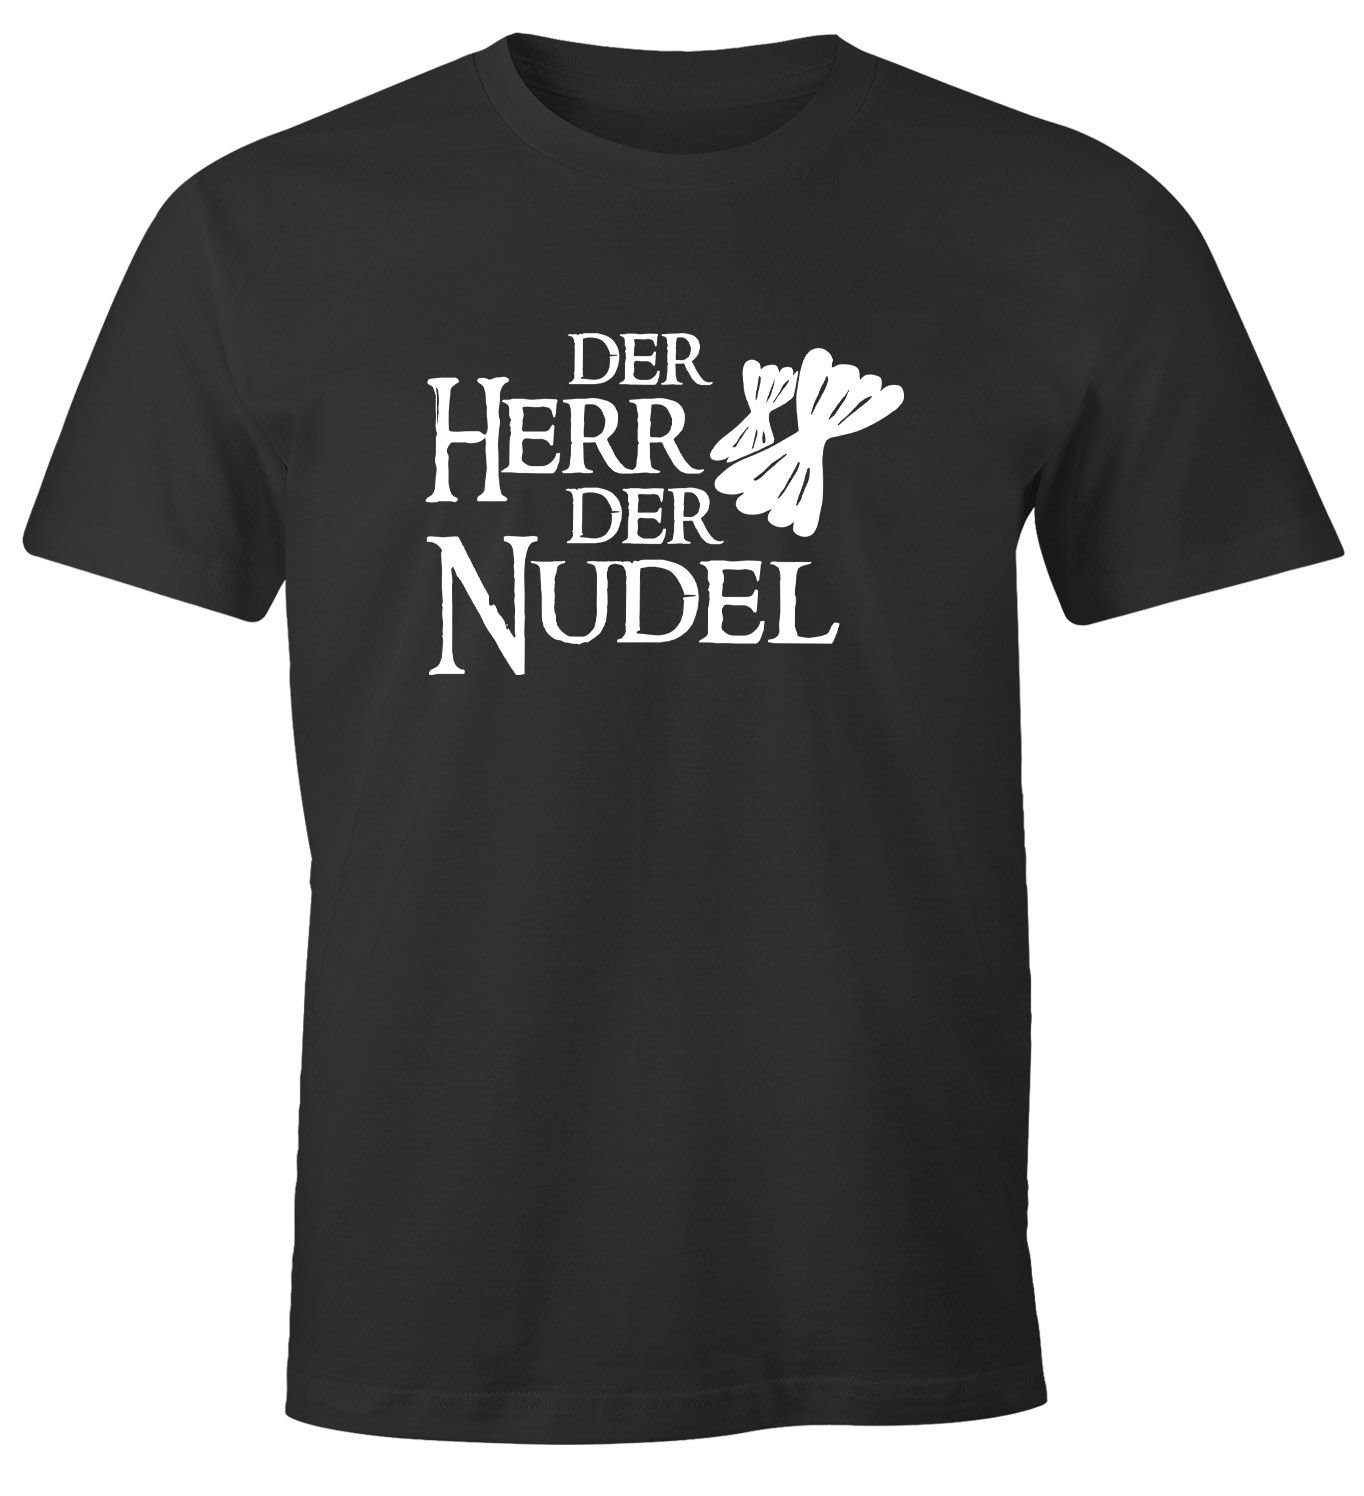 Der Parodie Film der Pasta Herr Print Herren bunkern Moonworks® Nudel mit MoonWorks kaufen hamstern Print-Shirt Hamsterkäufe T-Shirt